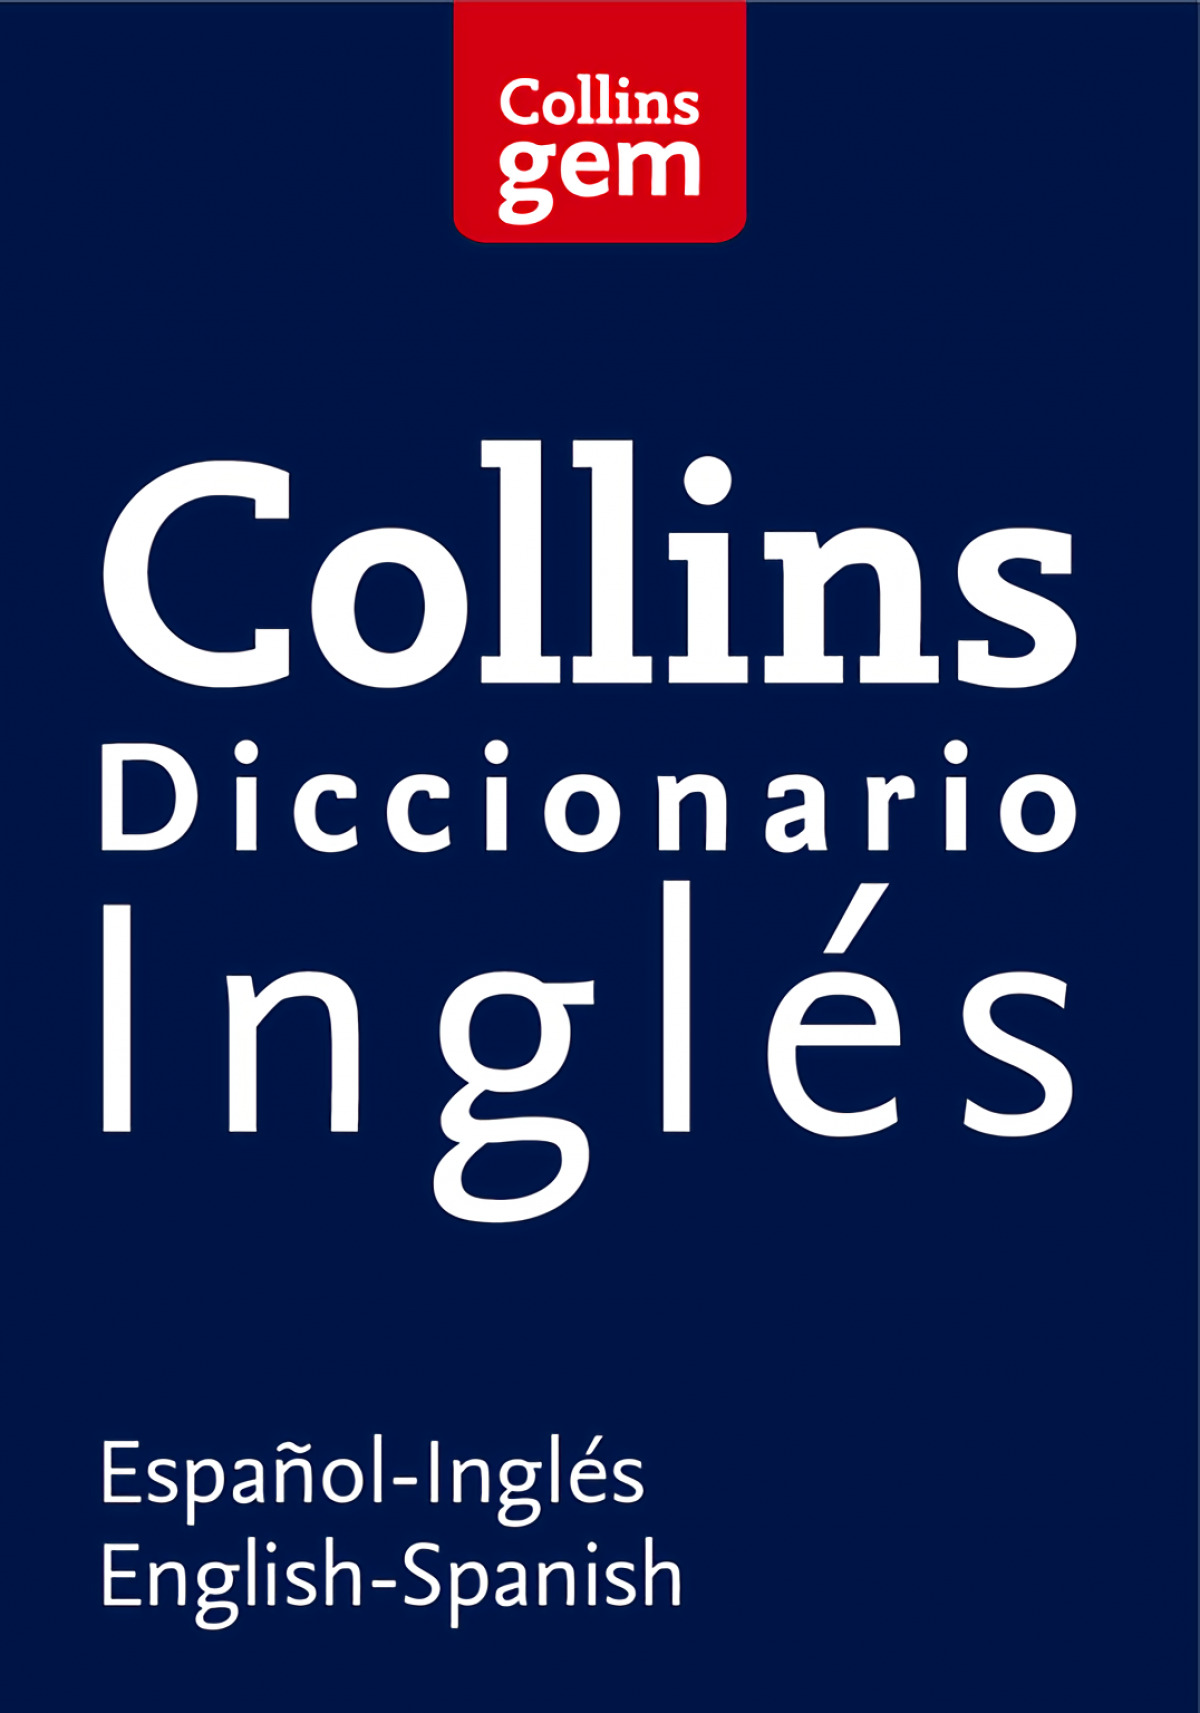 Diccionario Collins GEM Inglés - Collins,